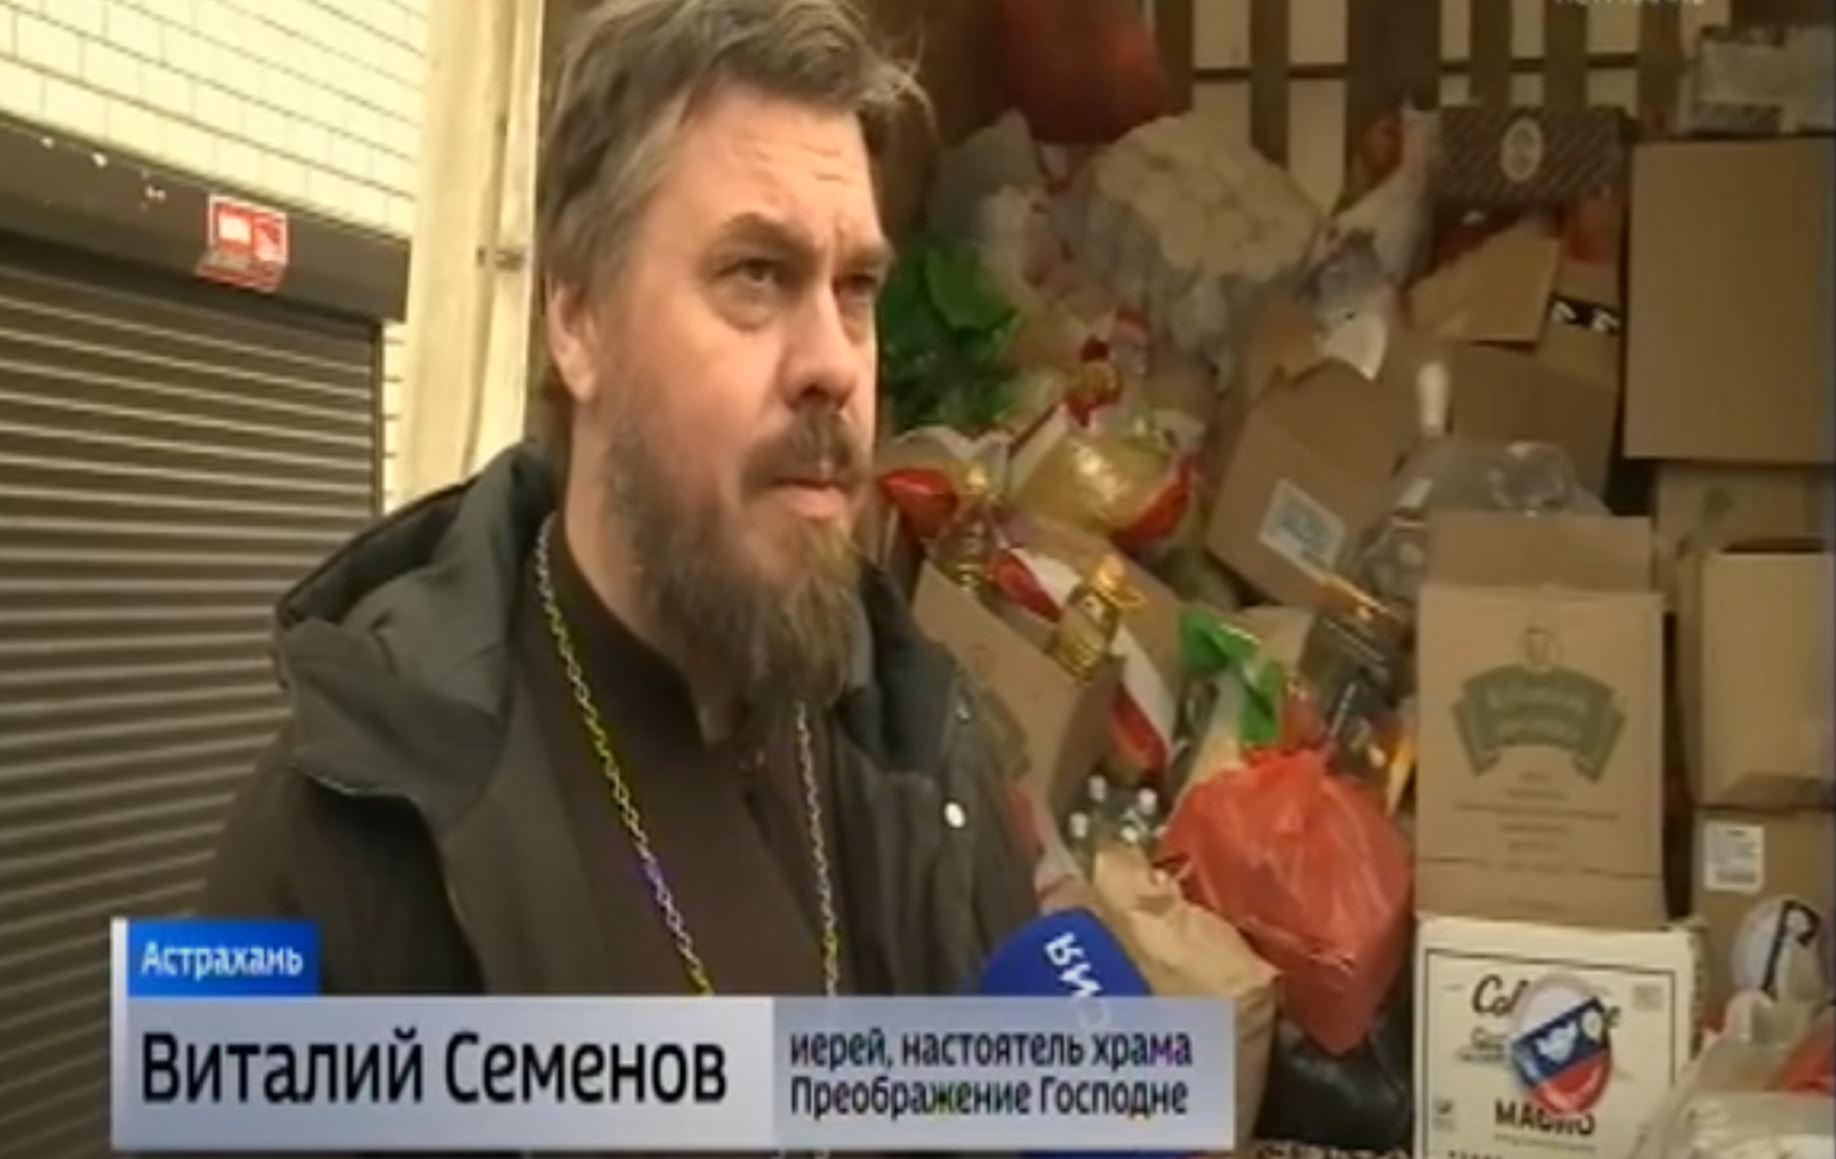 Видеосюжет ГТРК «Лотос»: Астраханское духовенство собирает гуманитарную помощь для жителей ДНР и ЛНР